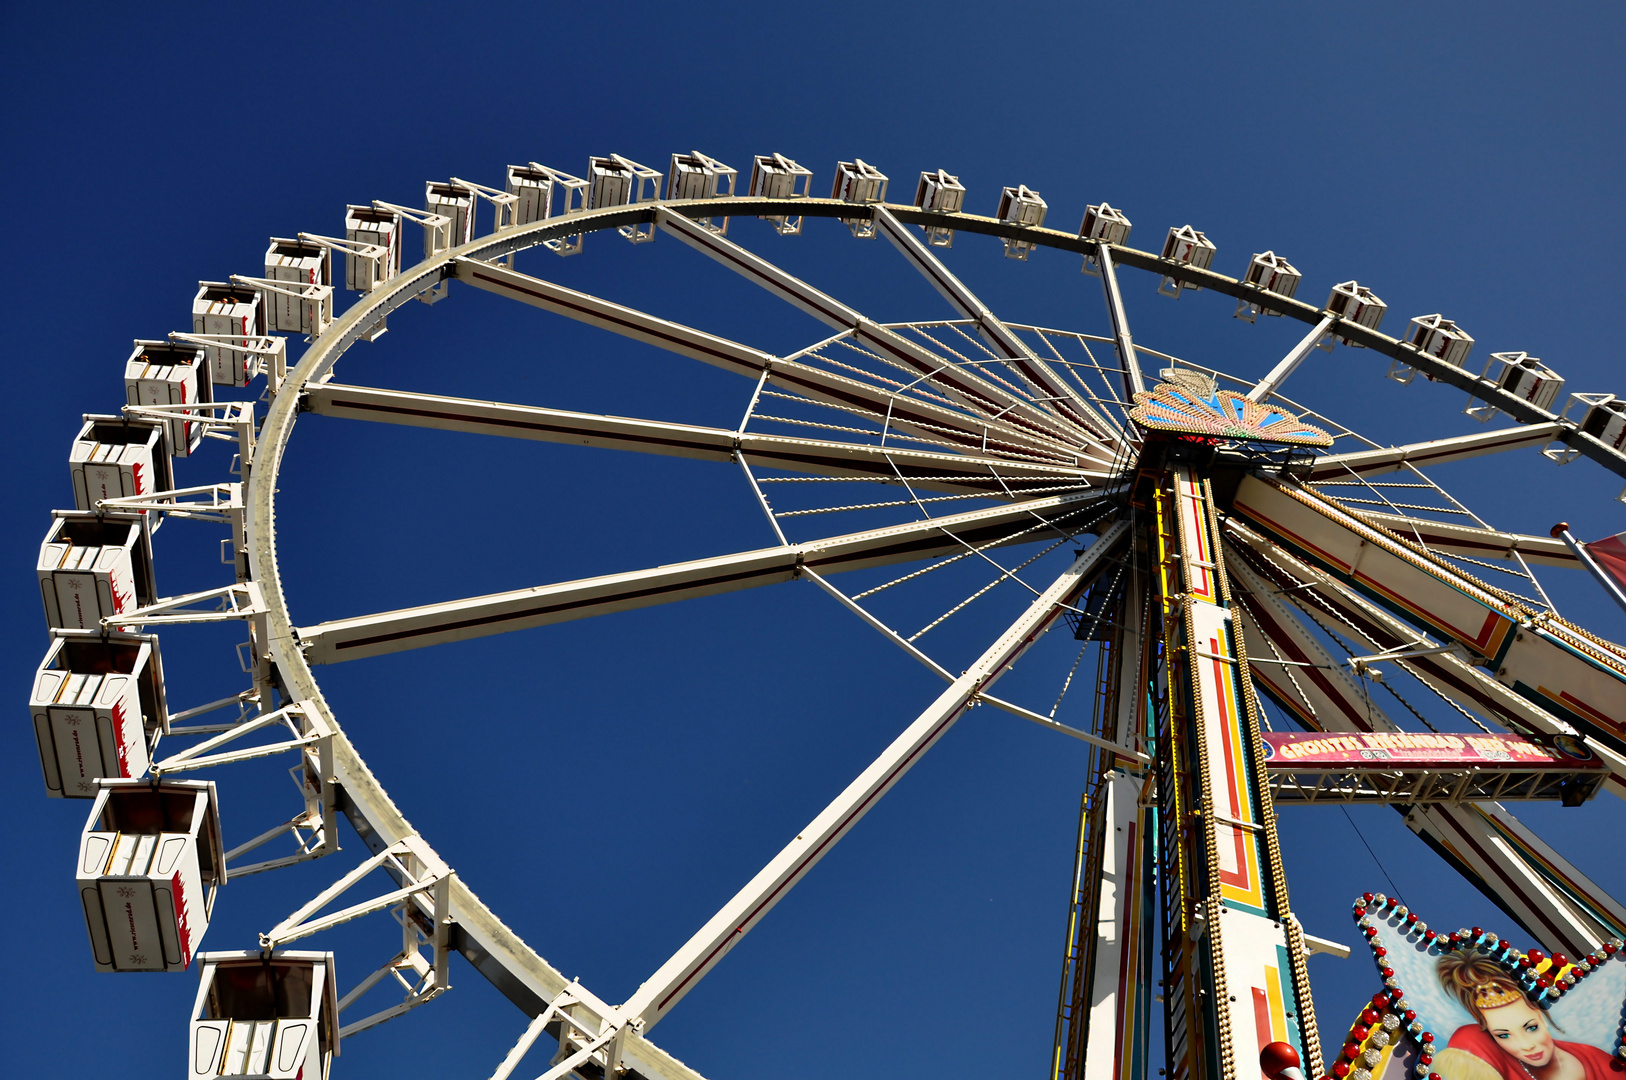 Riesenrad / Ferris Wheel